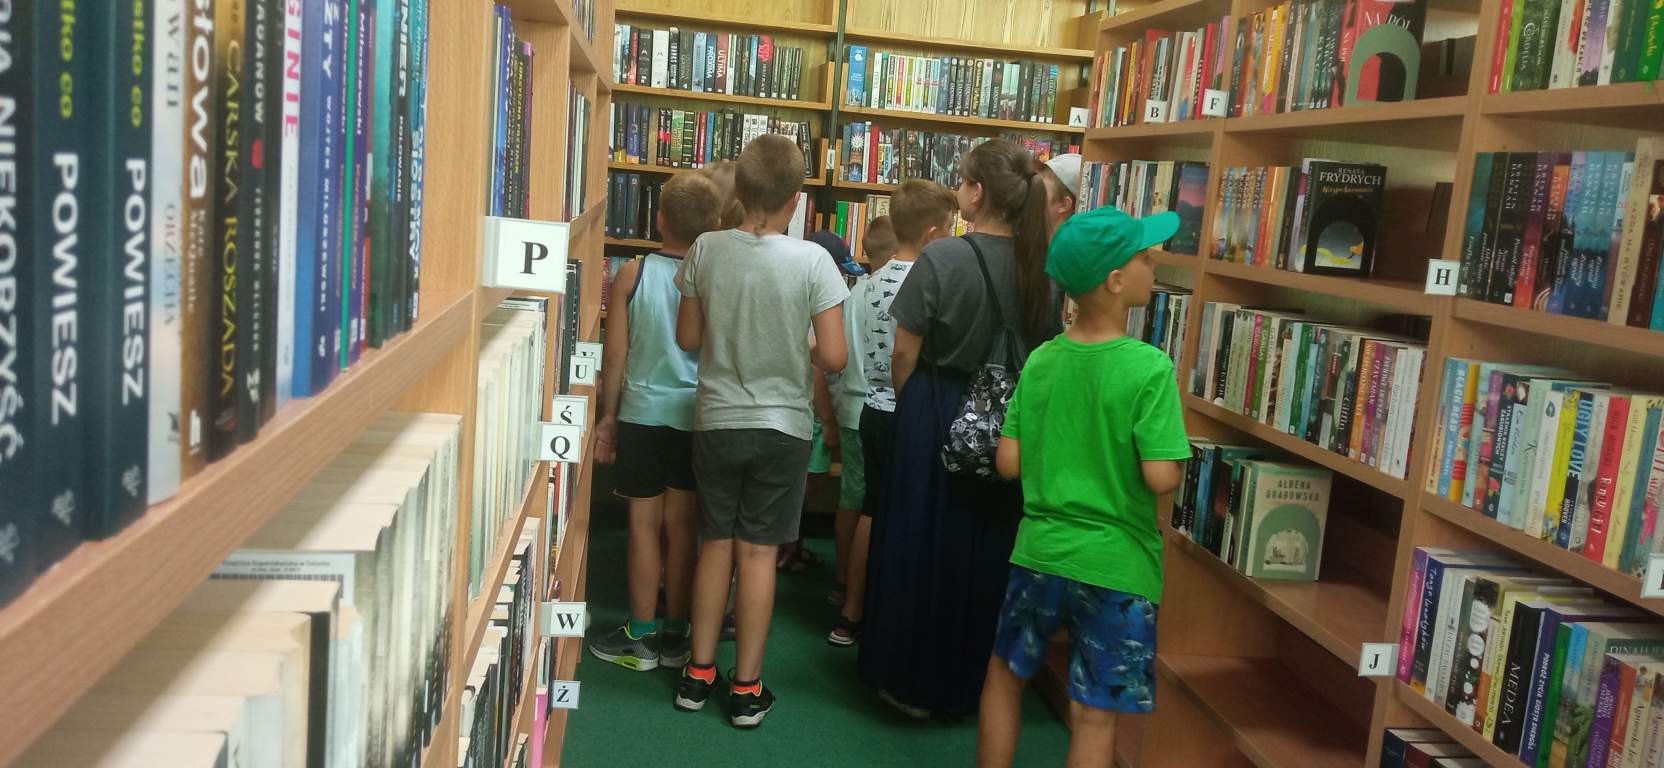 Fotografia przedstawia uczestników zajęć w bibliotece. Dzieci krzątają się między regałami